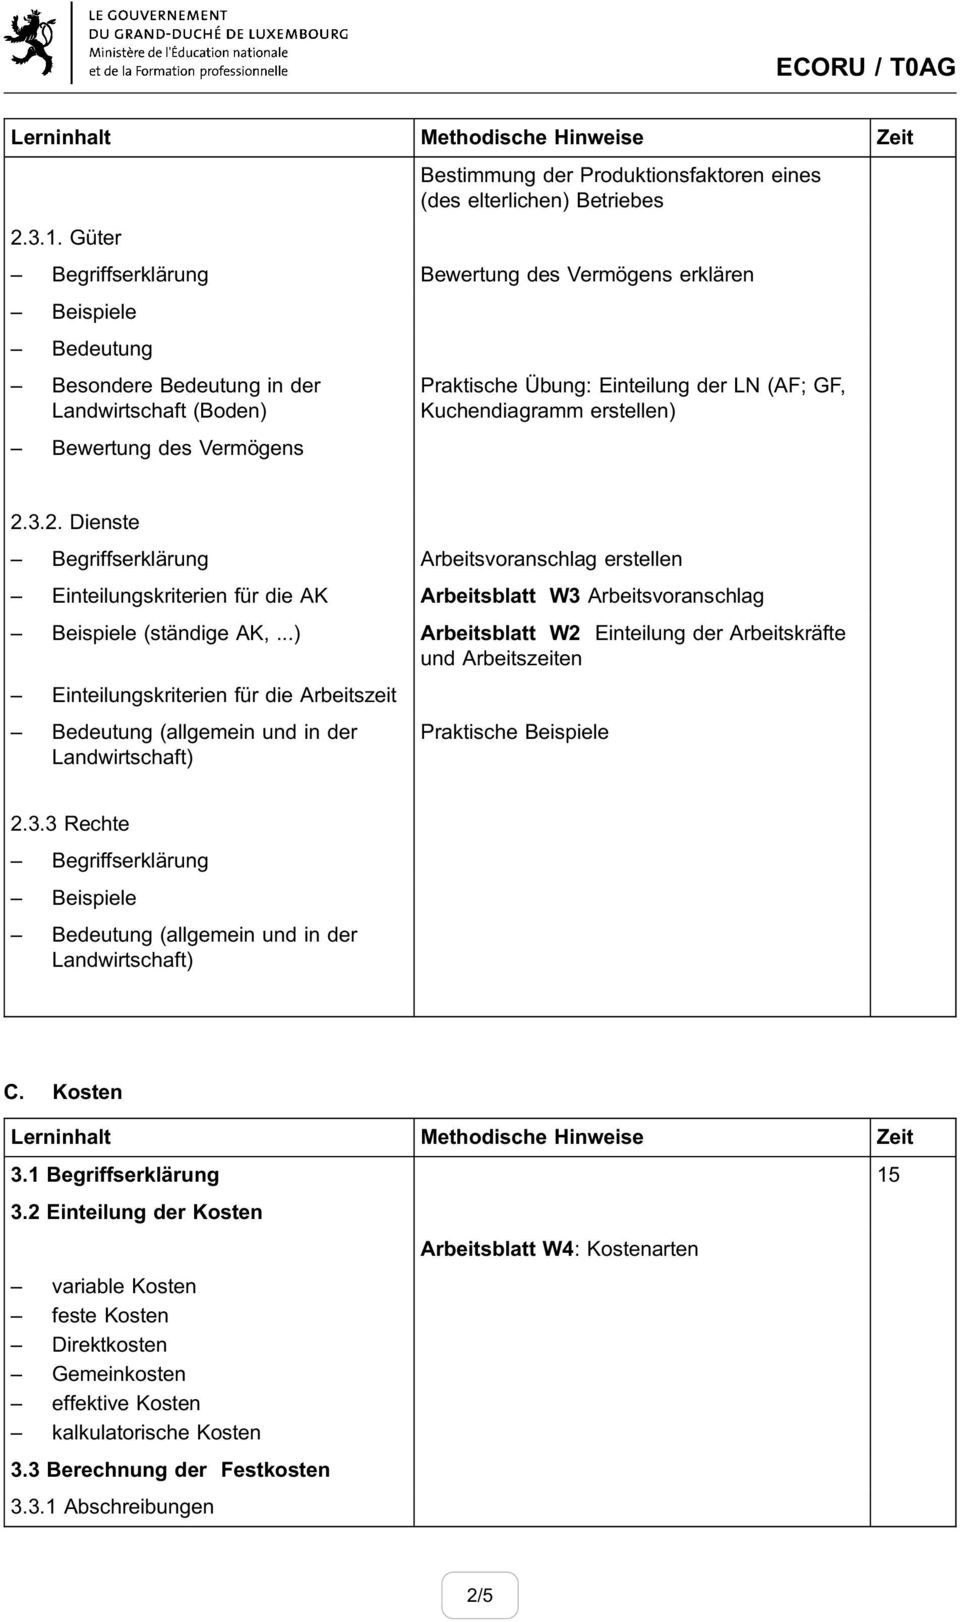 3.2. Dienste Arbeitsvoranschlag erstellen Einteilungskriterien für die AK Arbeitsblatt W3 Arbeitsvoranschlag Beispiele (ständige AK,.